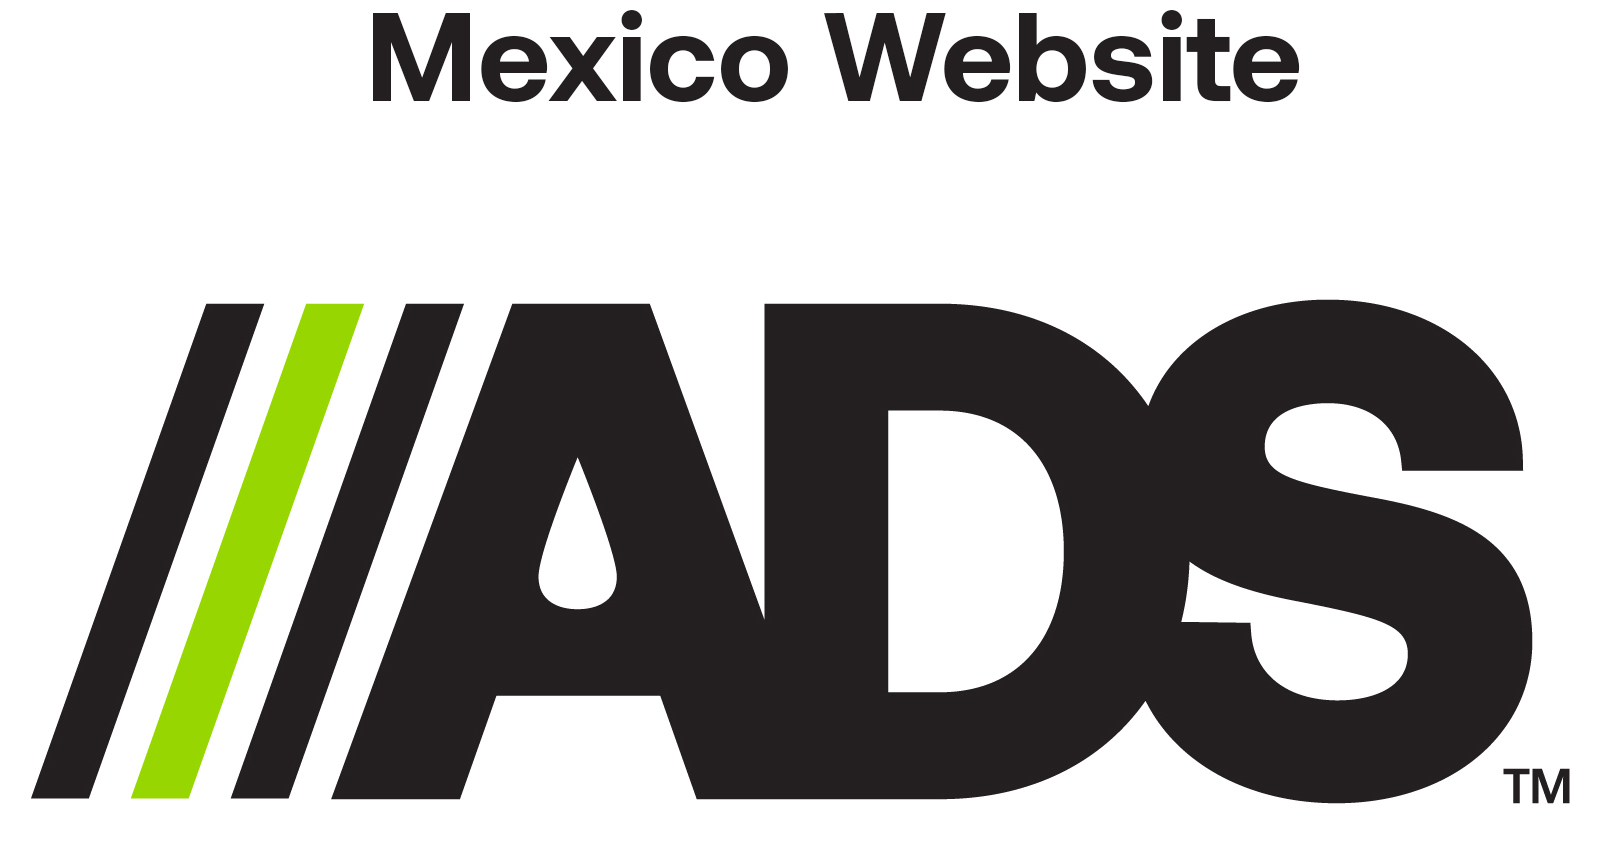 Mexico Website